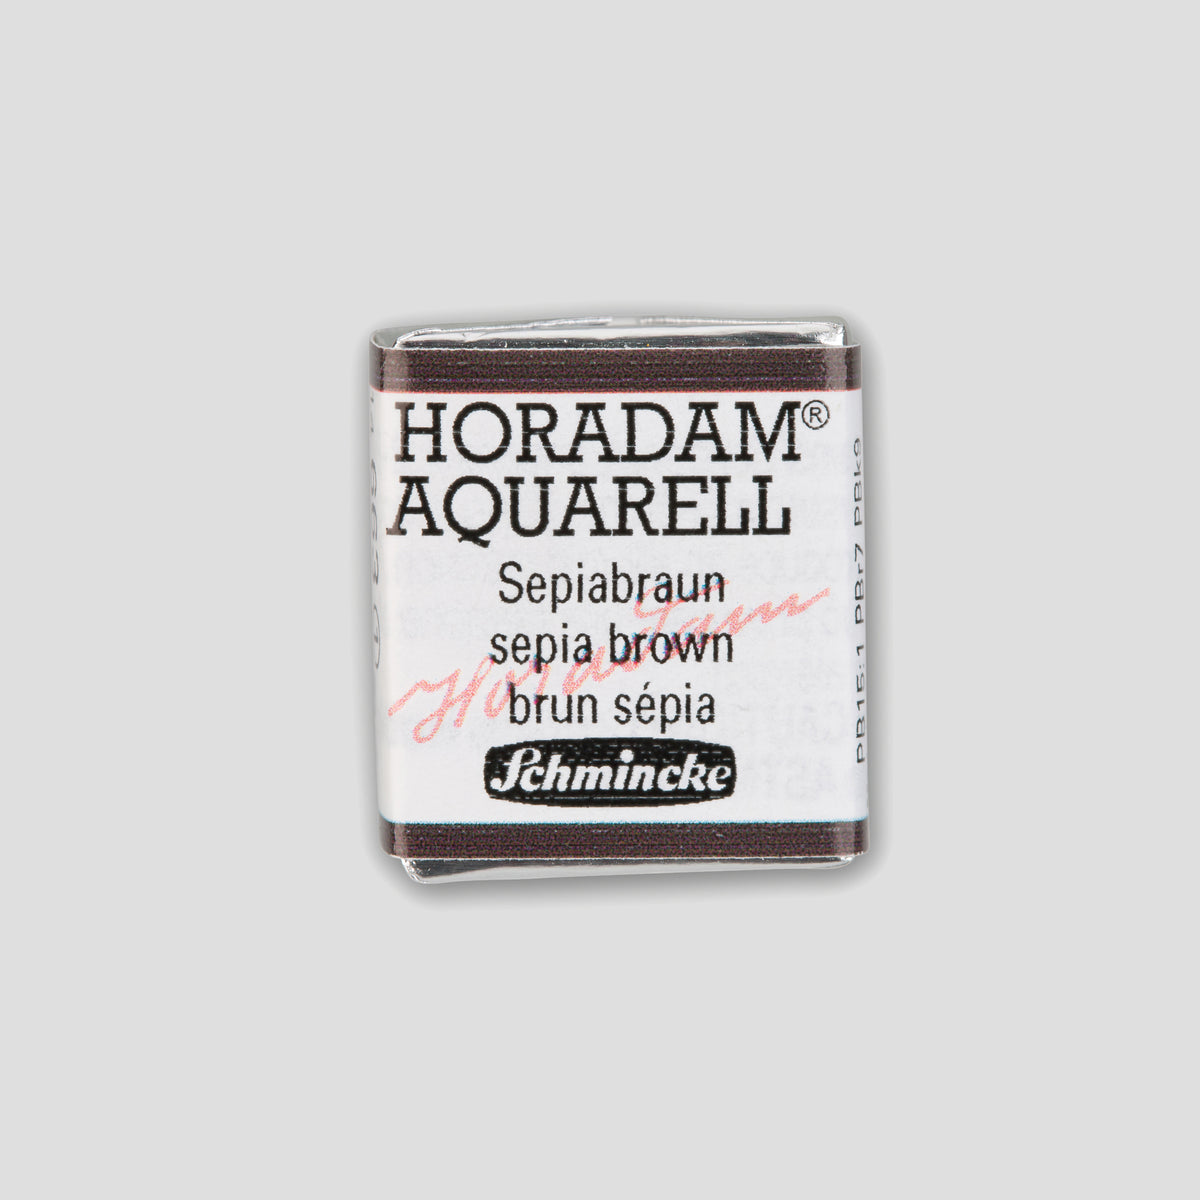 Schmincke Horadam® Halbpfanne Sepiabraun